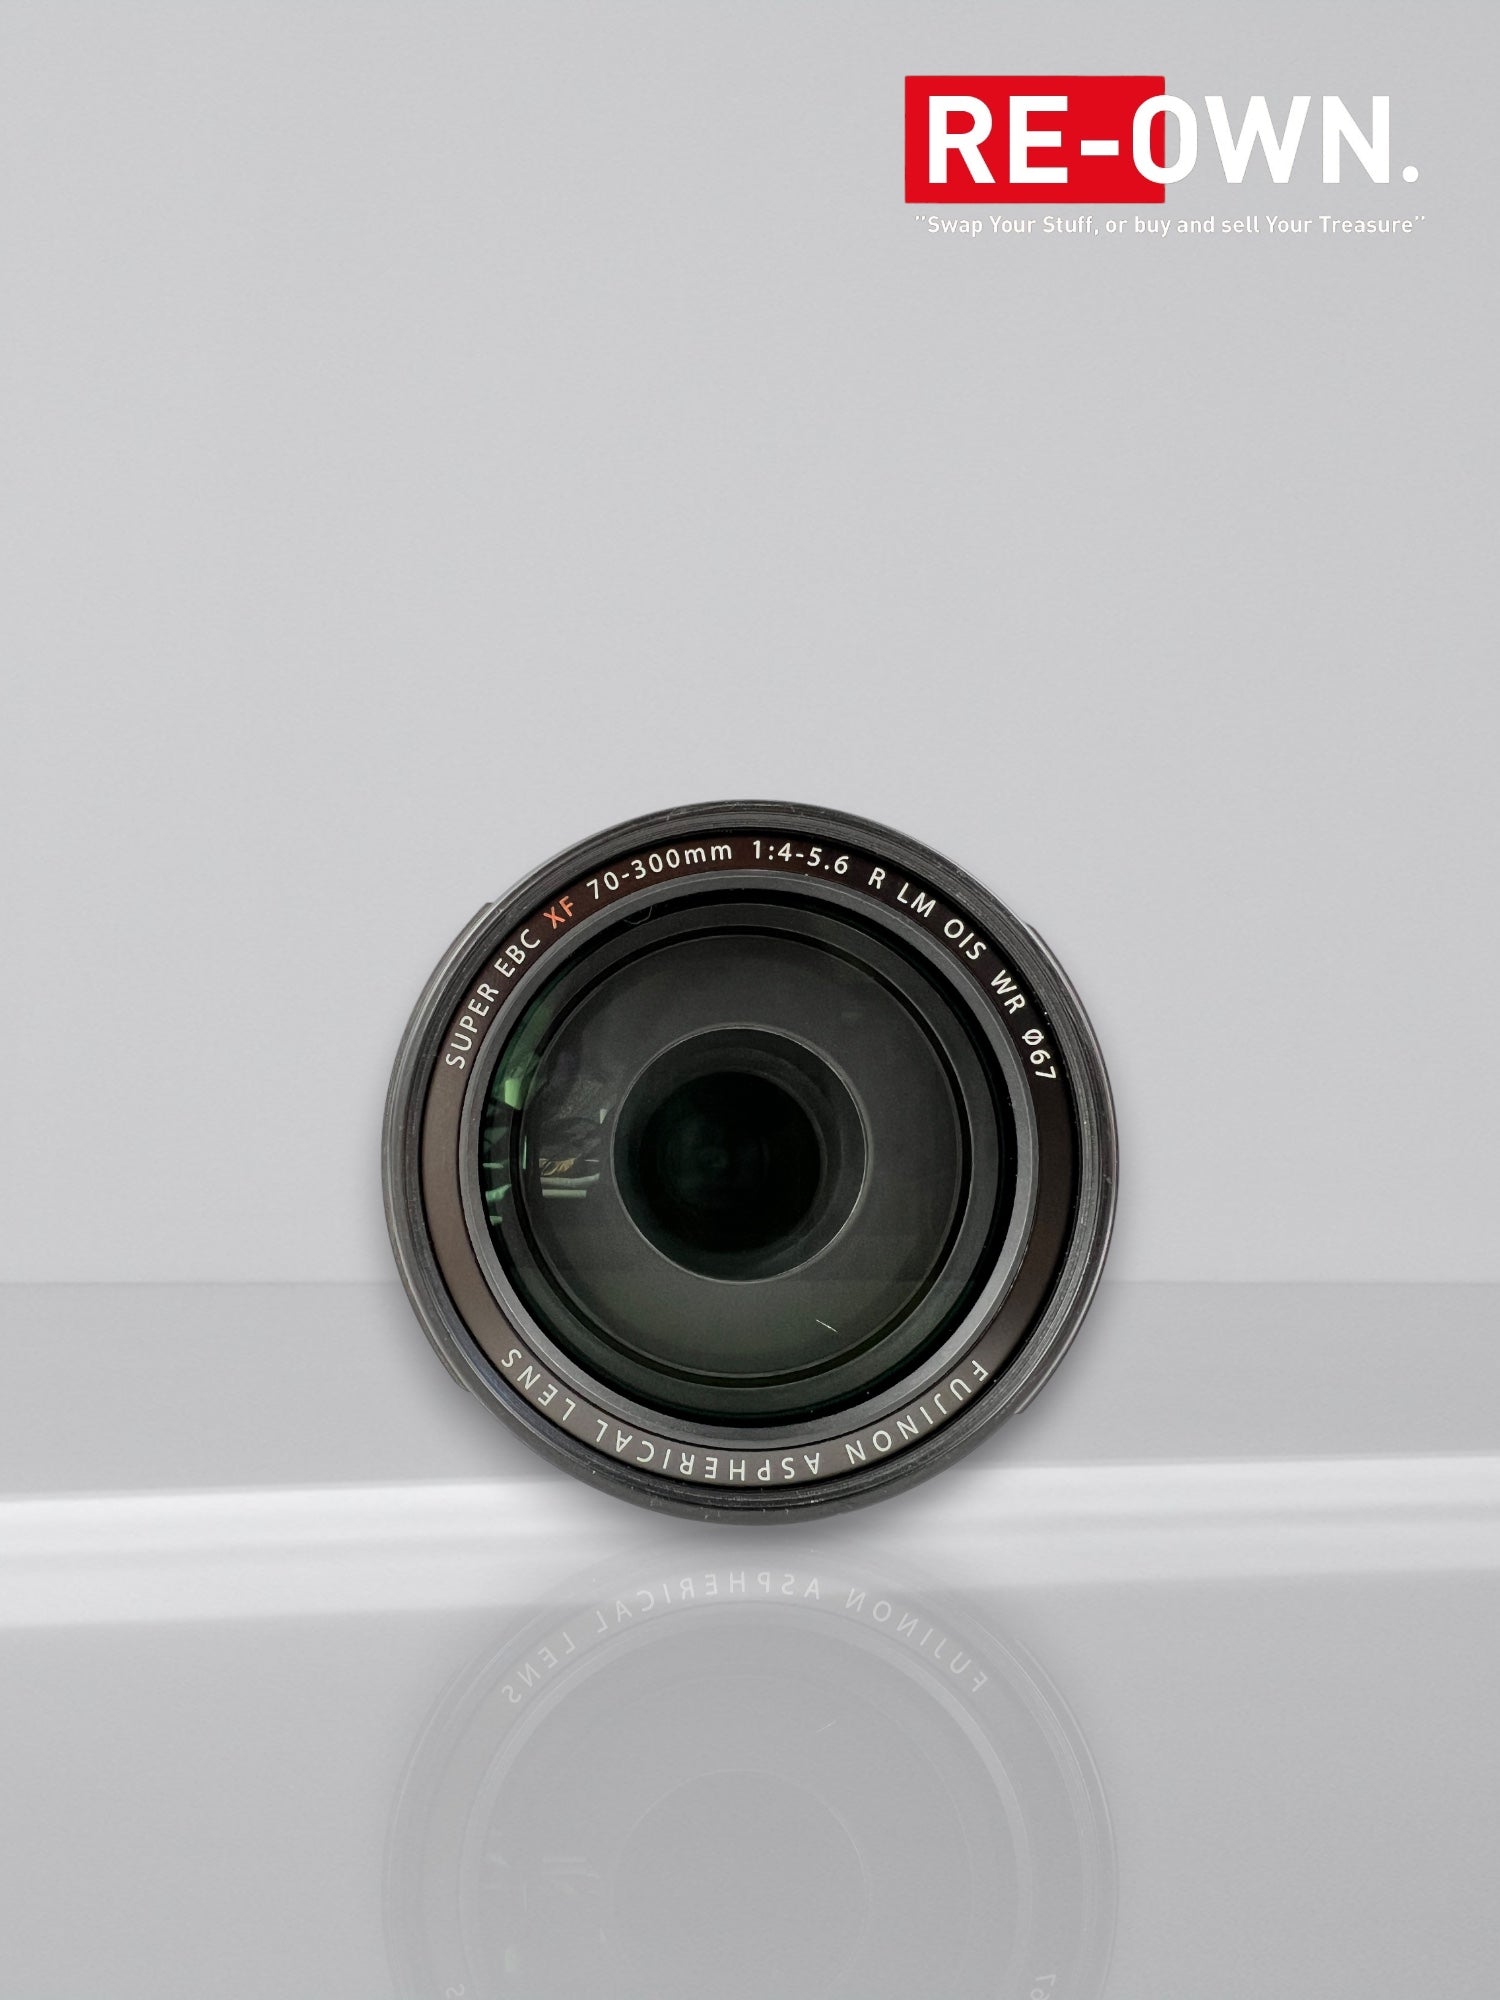 Fujifilm XF 70-300mm f/4-5.6 LM OIS WR